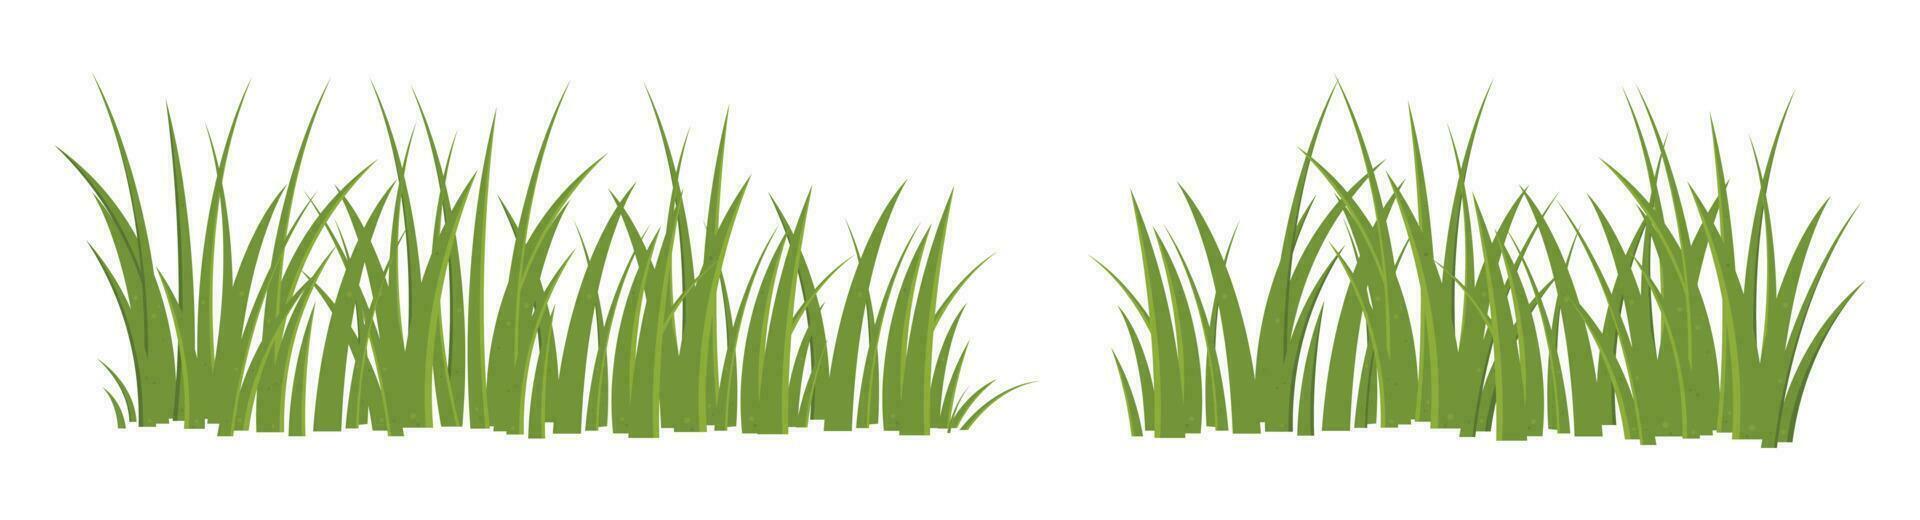 Karikatur Gras Blätter Sammlung Vektor Illustration isoliert auf Weiß